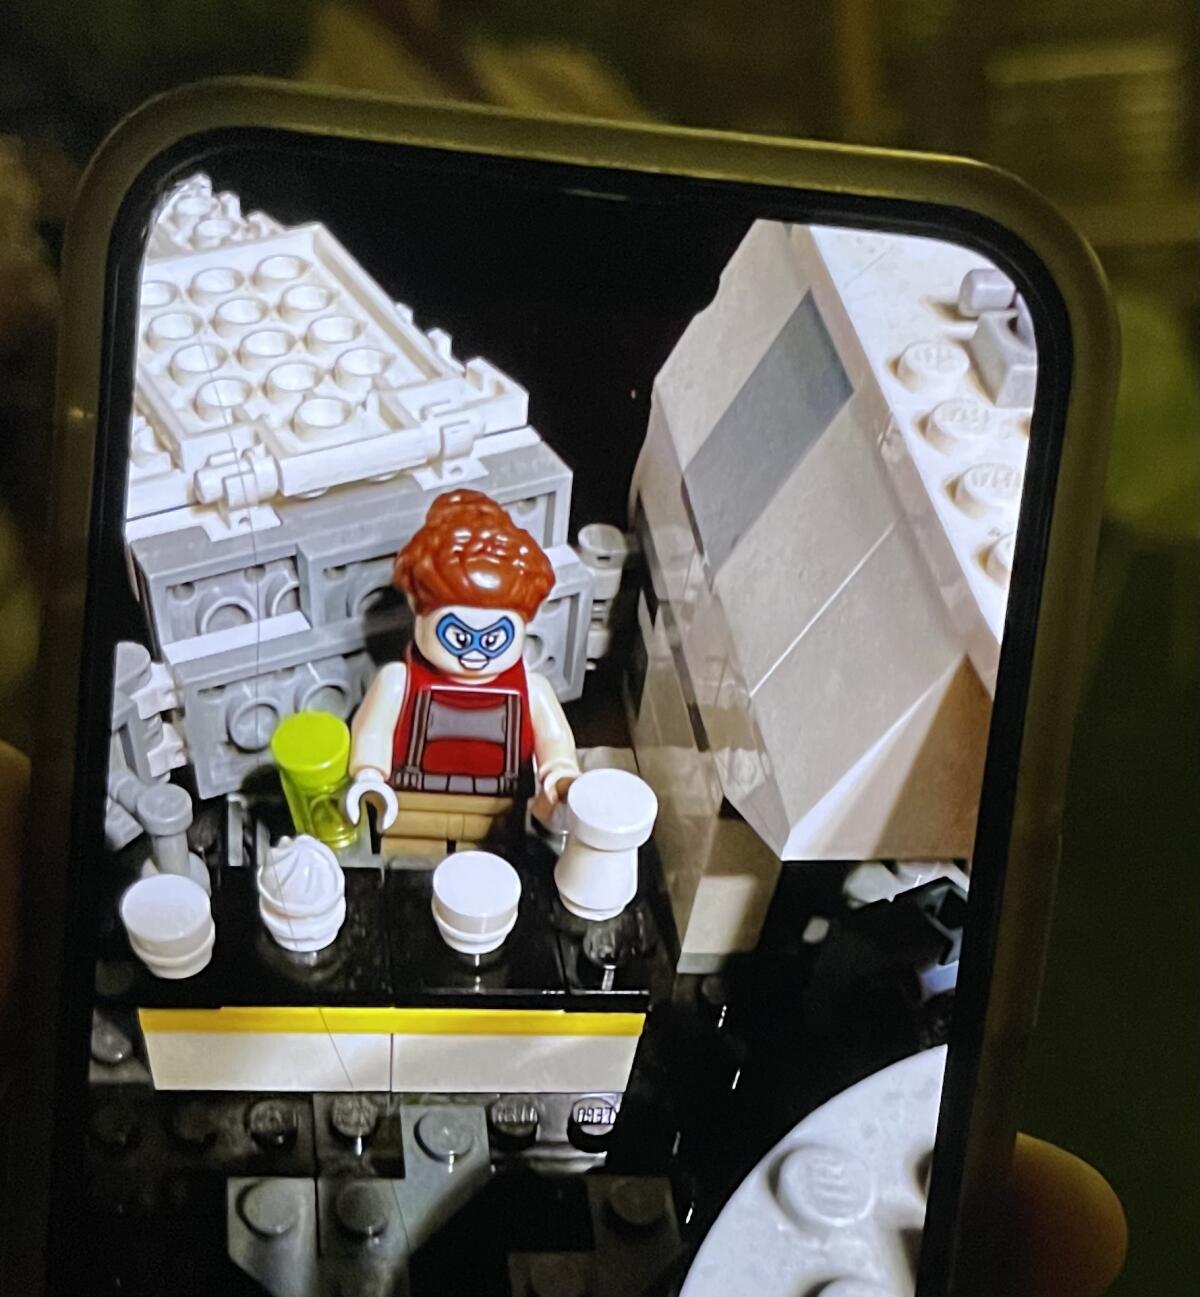 Mozza-Köchin und Inhaberin Nancy Silverton, dargestellt in Legos vom sechsjährigen Fan Aleister.